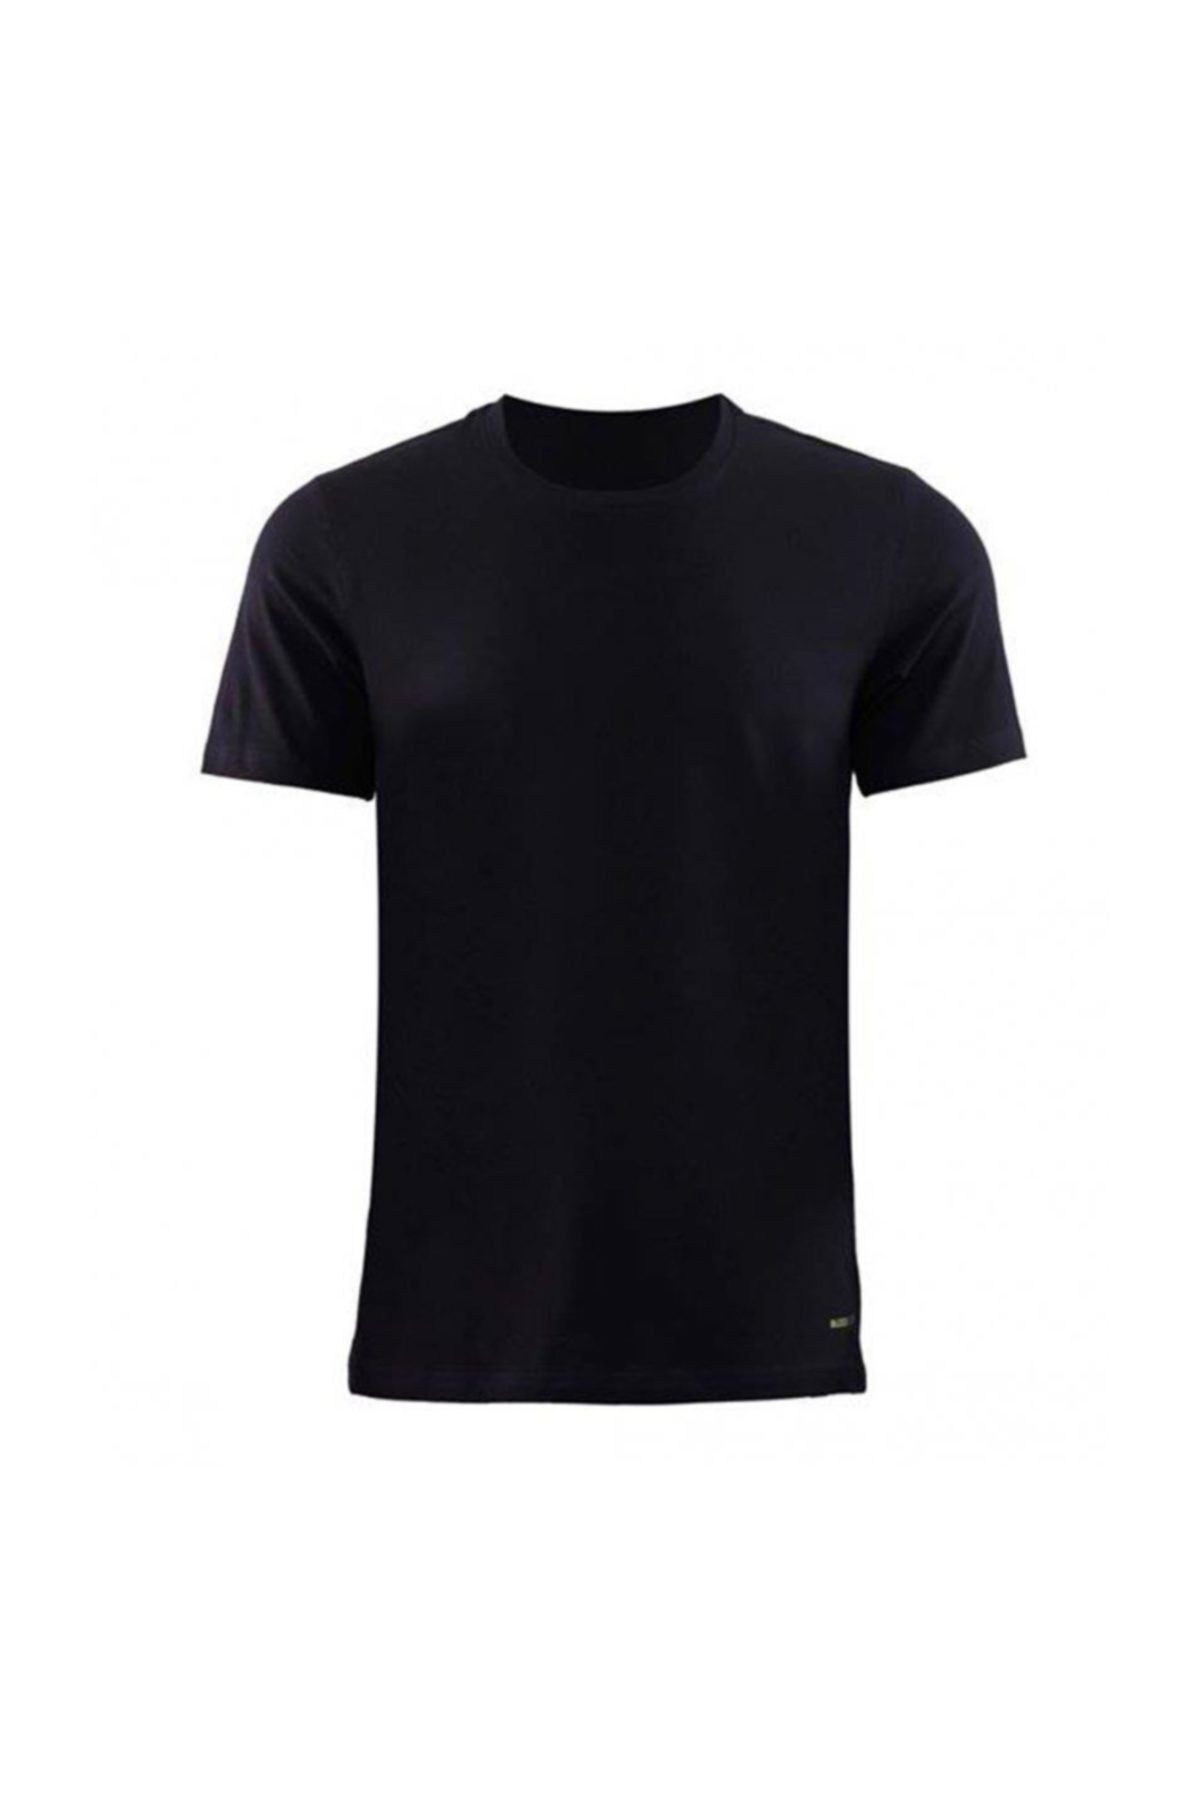 Blackspade Erkek Siyah Tender Cotton T-Shirt 9235